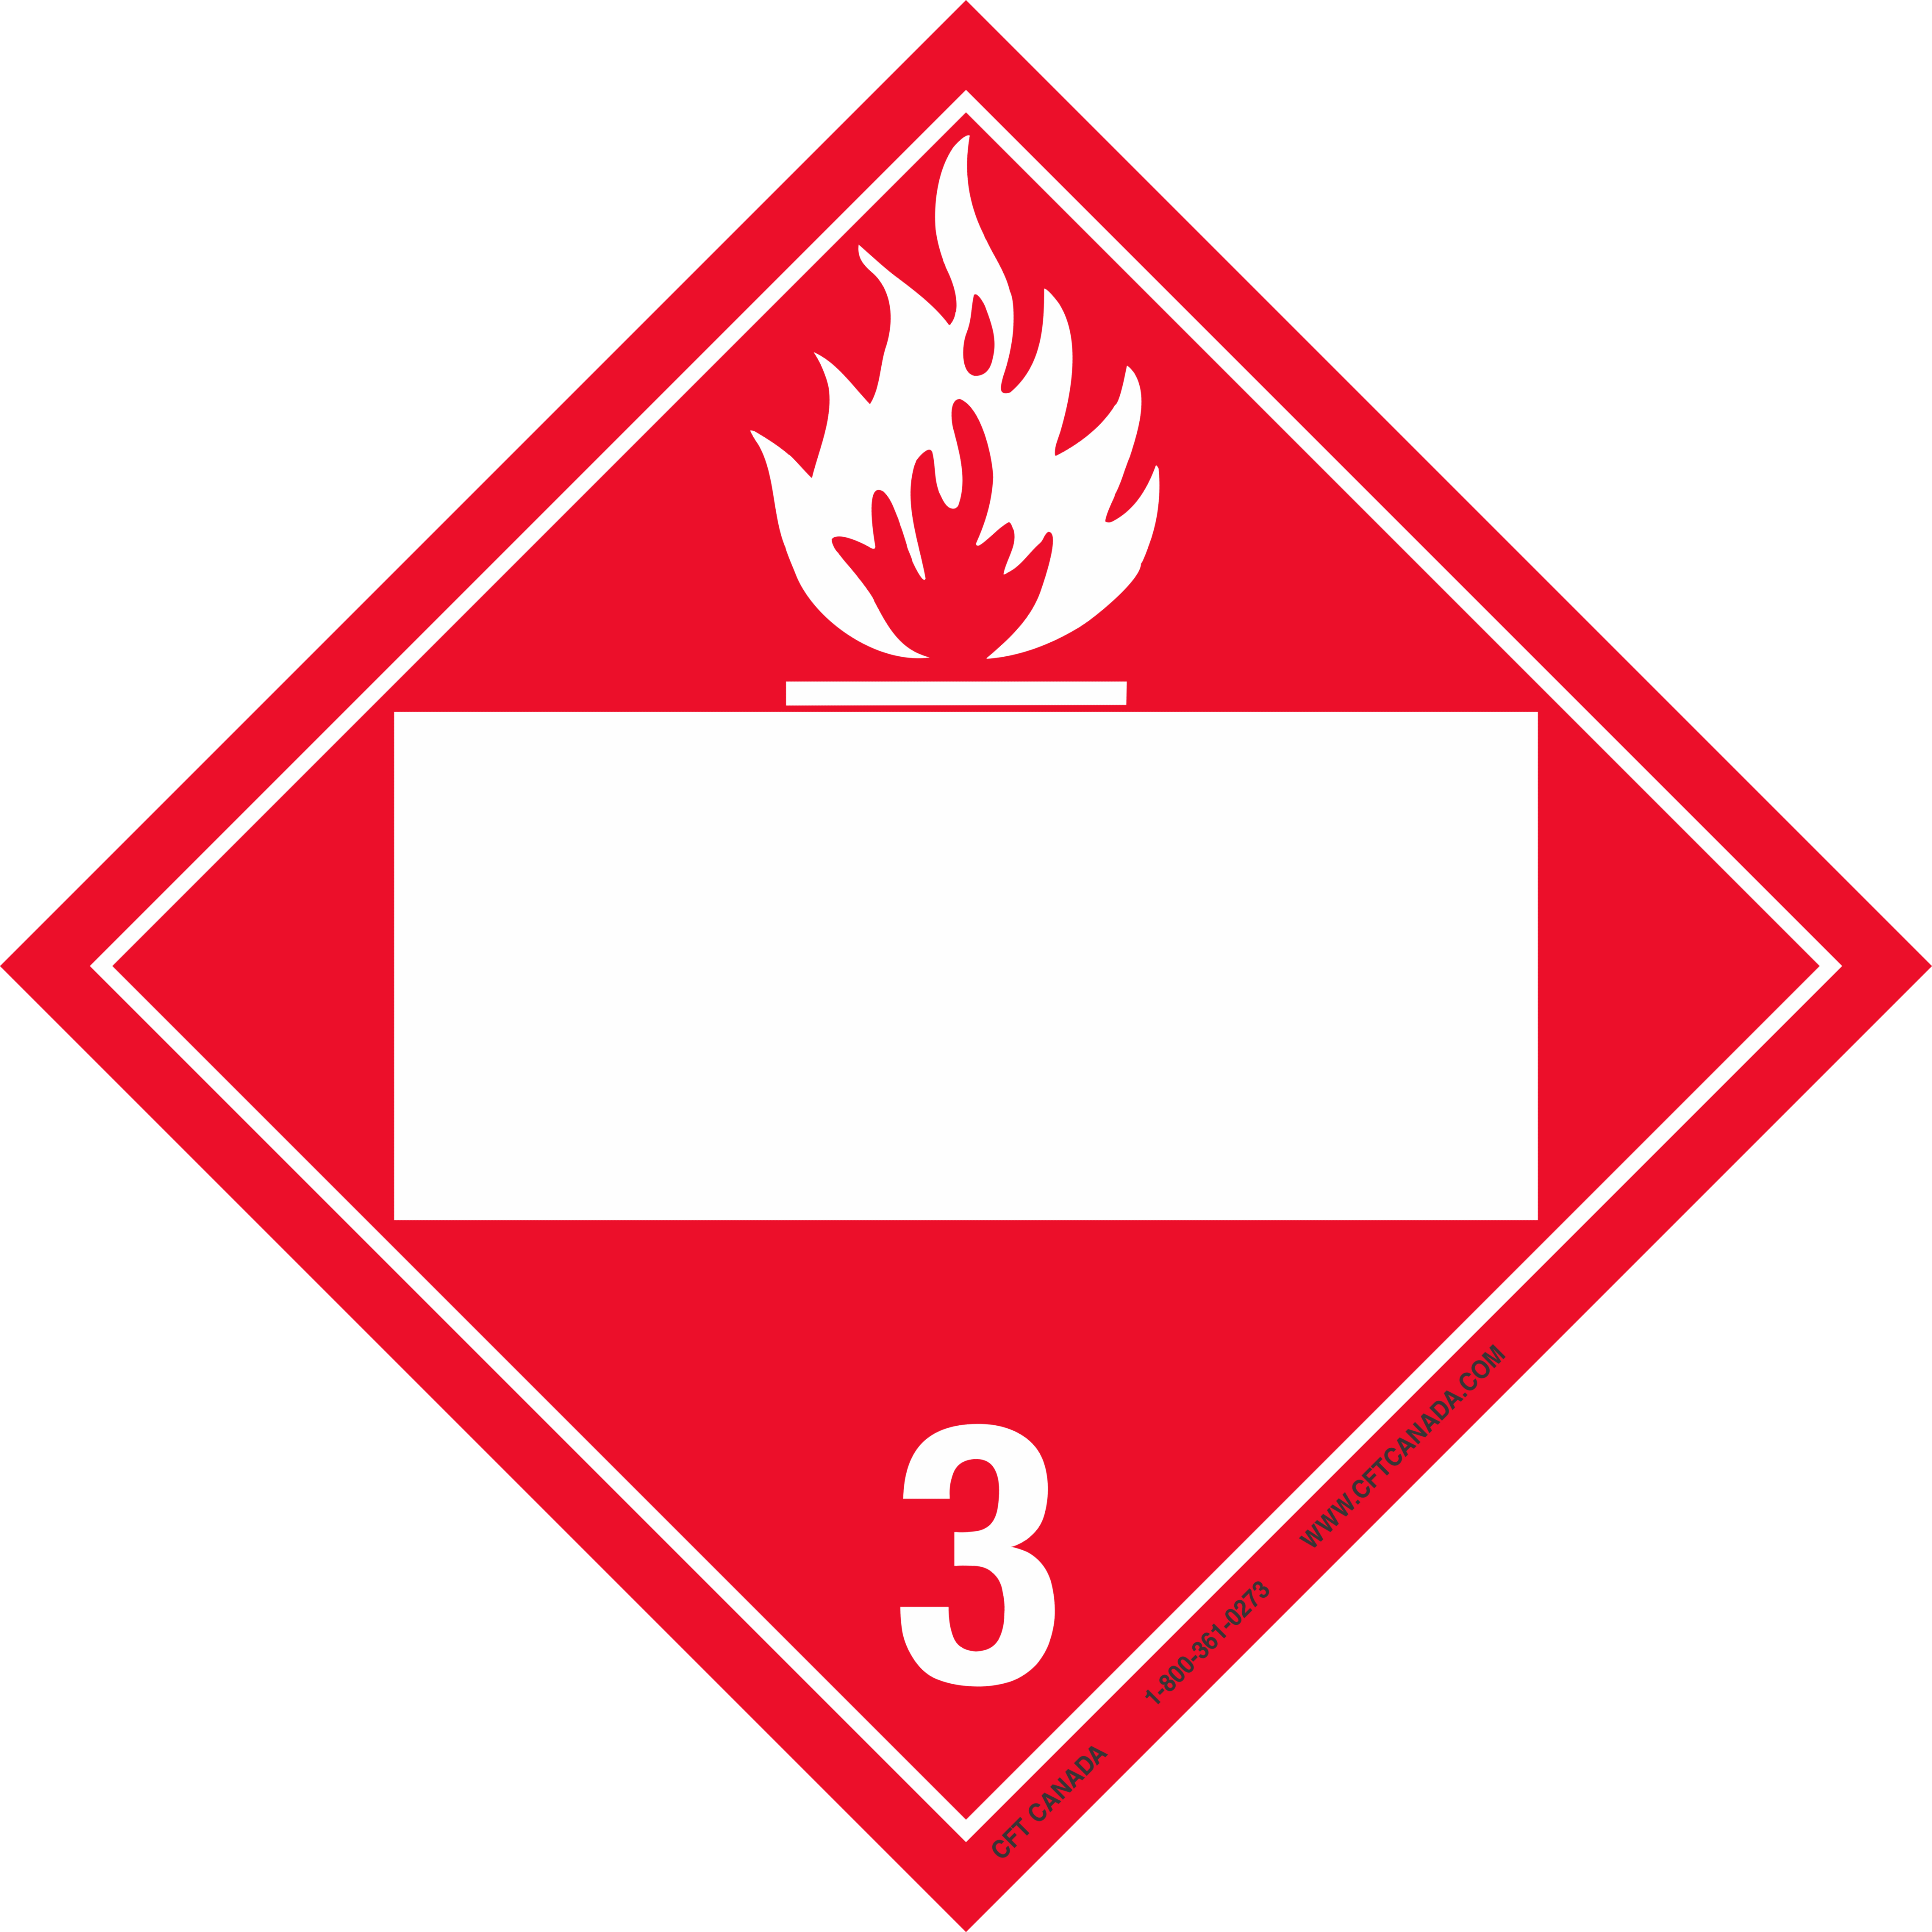 Класс 3- легковоспламеняющиеся жидкости ( ЛВЖ);. Класс 2- легковоспламеняющиеся жидкости ( ЛВЖ);. Знак 3 класс опасности легковоспламеняющиеся жидкости. Знак опасности класс 3 ЛВЖ.